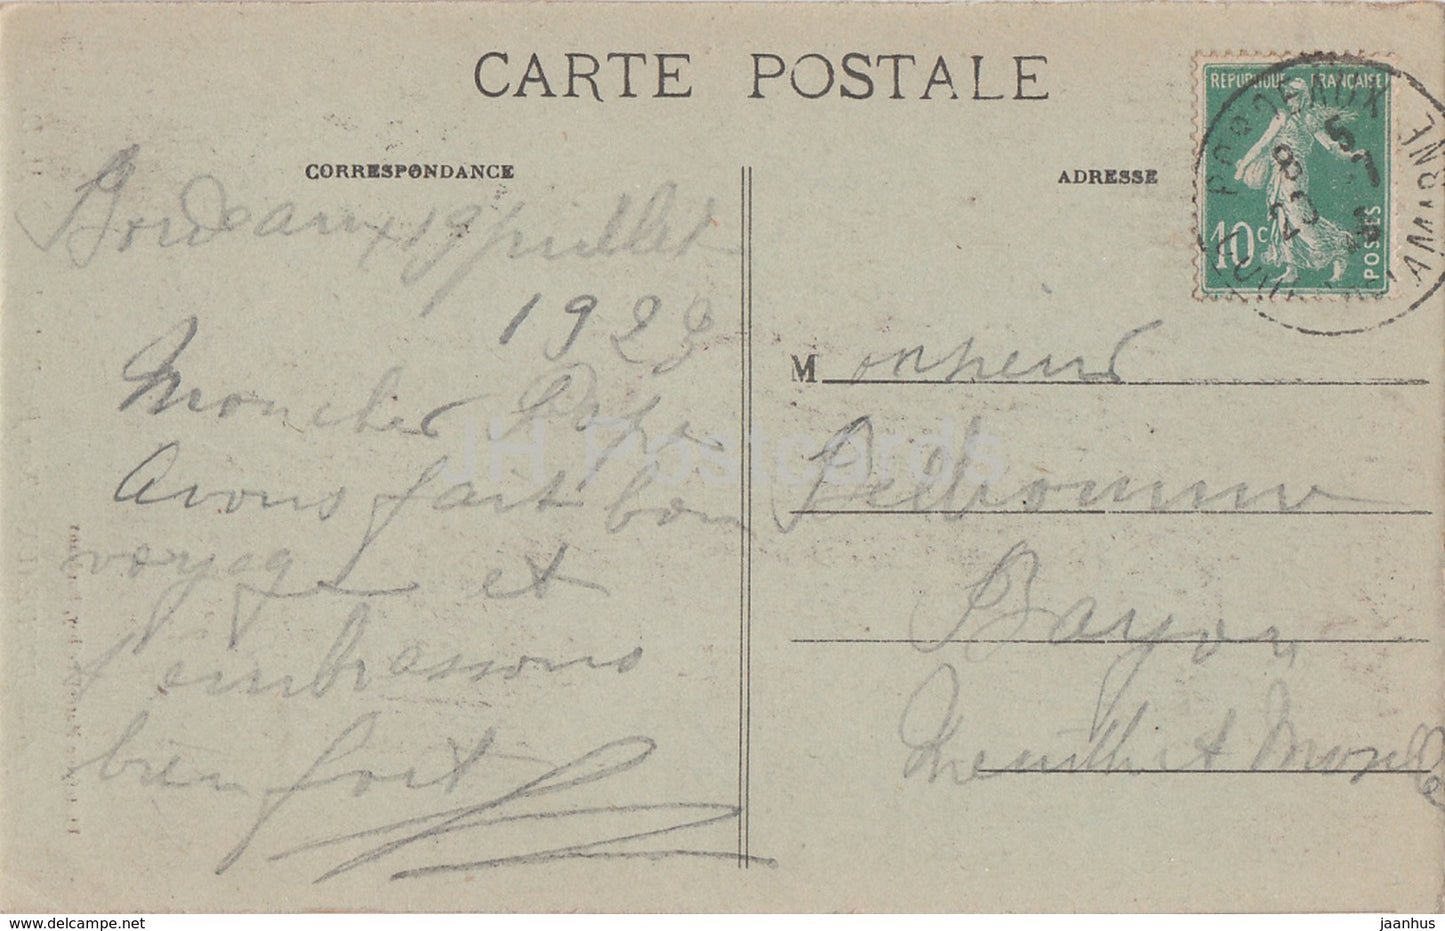 Bordeaux - La Tour Pey Berland - 146 - alte Postkarte - 1923 - Frankreich - gebraucht